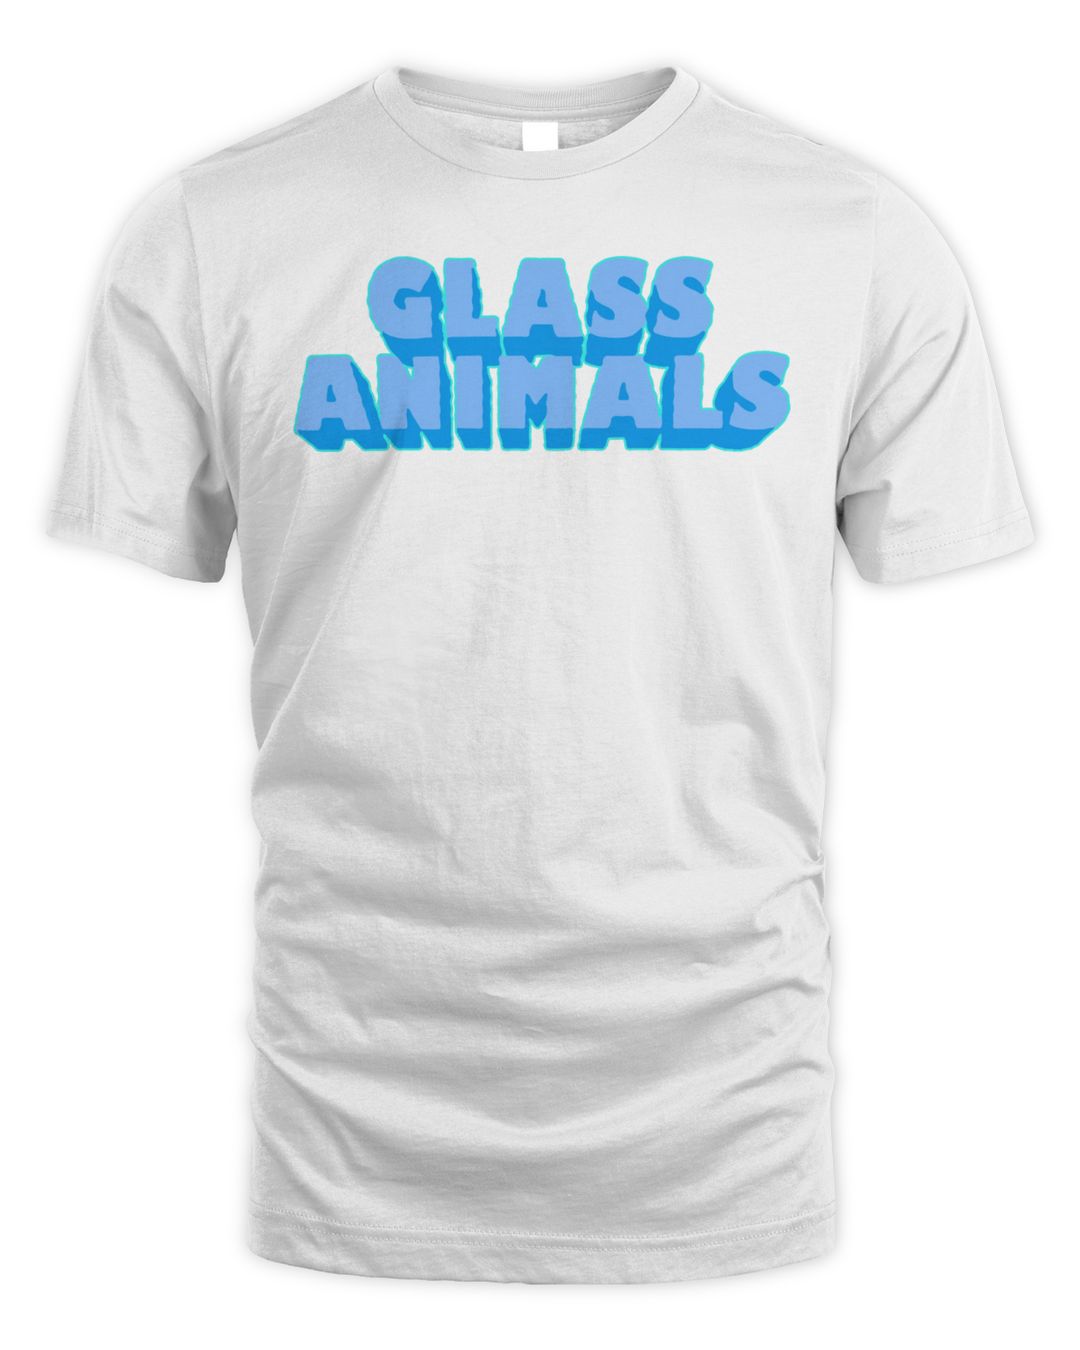 Glass Animals Merch Logo Shirt